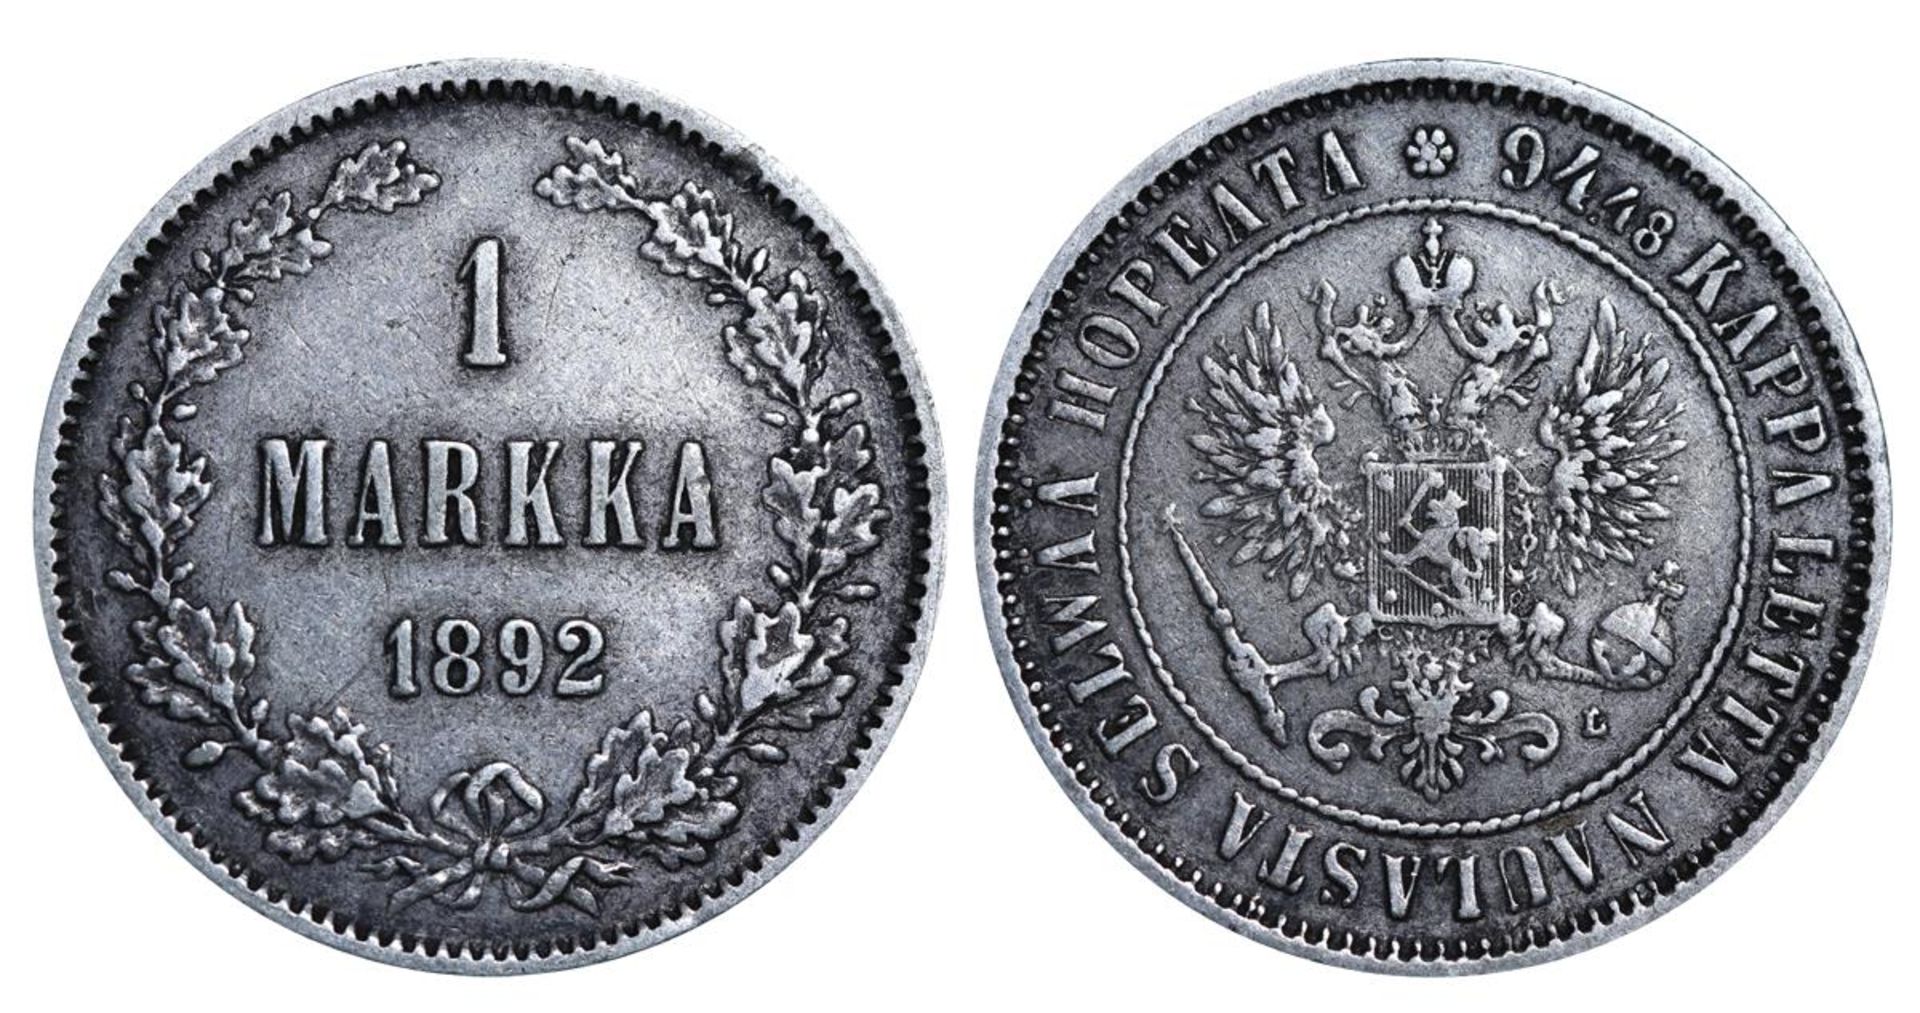 Russian Empire, 1 Markka, 1892 year, L